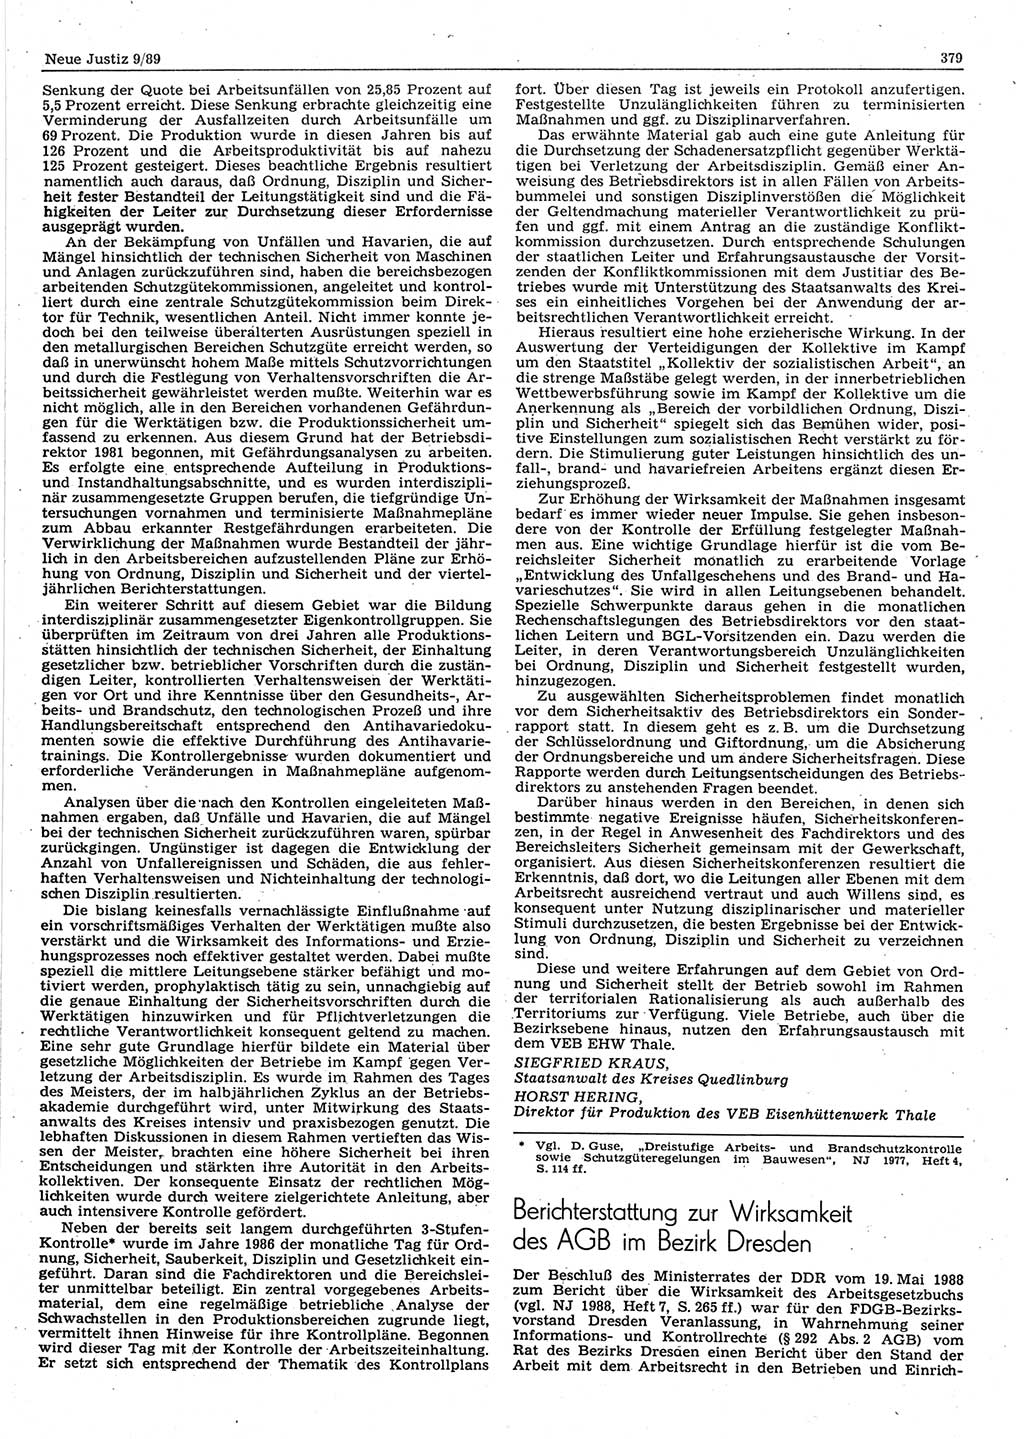 Neue Justiz (NJ), Zeitschrift für sozialistisches Recht und Gesetzlichkeit [Deutsche Demokratische Republik (DDR)], 43. Jahrgang 1989, Seite 379 (NJ DDR 1989, S. 379)